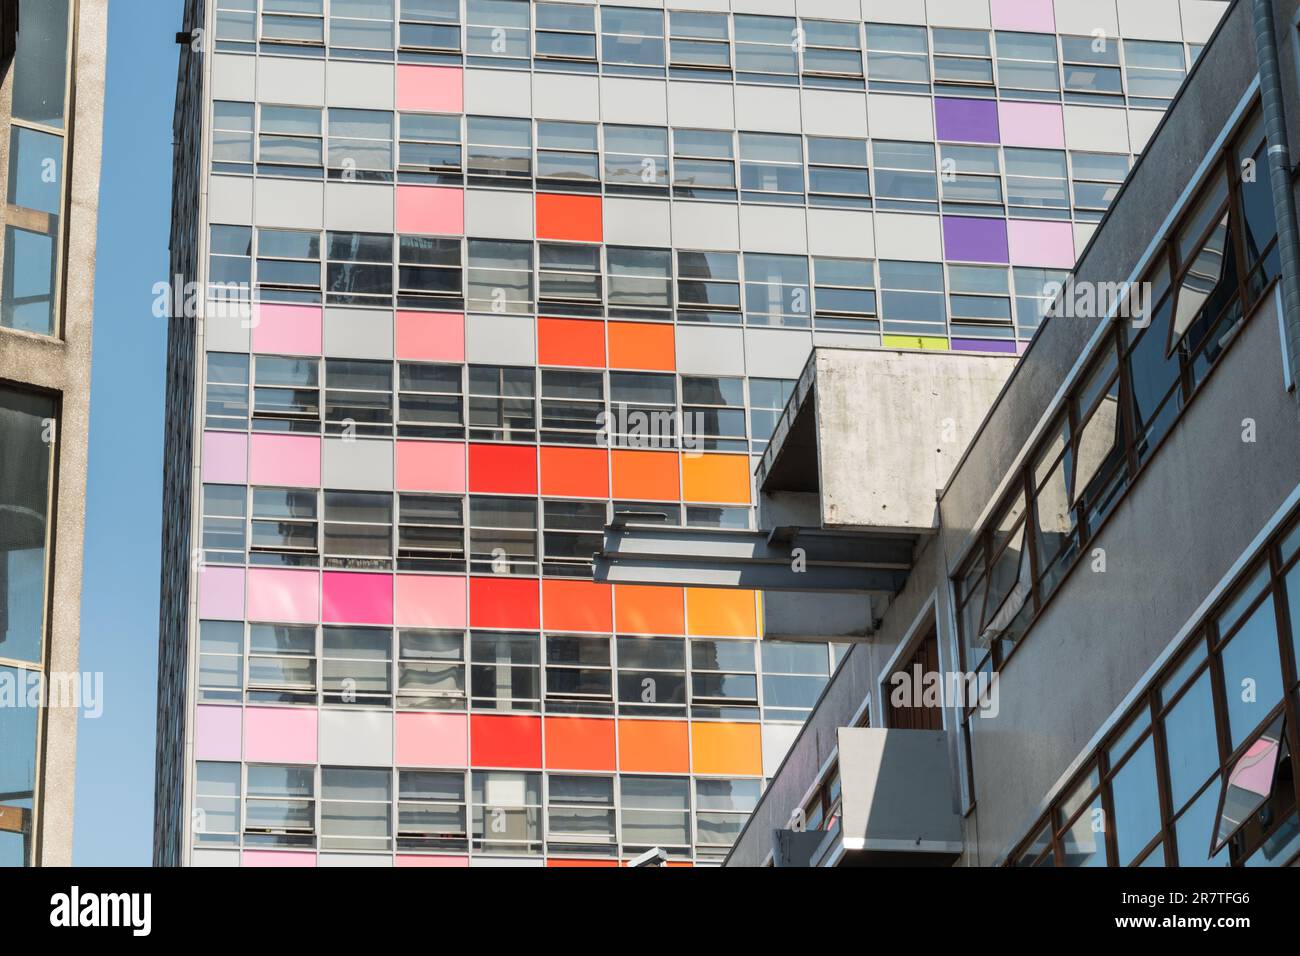 Le bâtiment coloré de la tour LCC, London College of communication, UAL, Elephant & Castle, Southwark, Londres, Angleterre, Royaume-Uni Banque D'Images